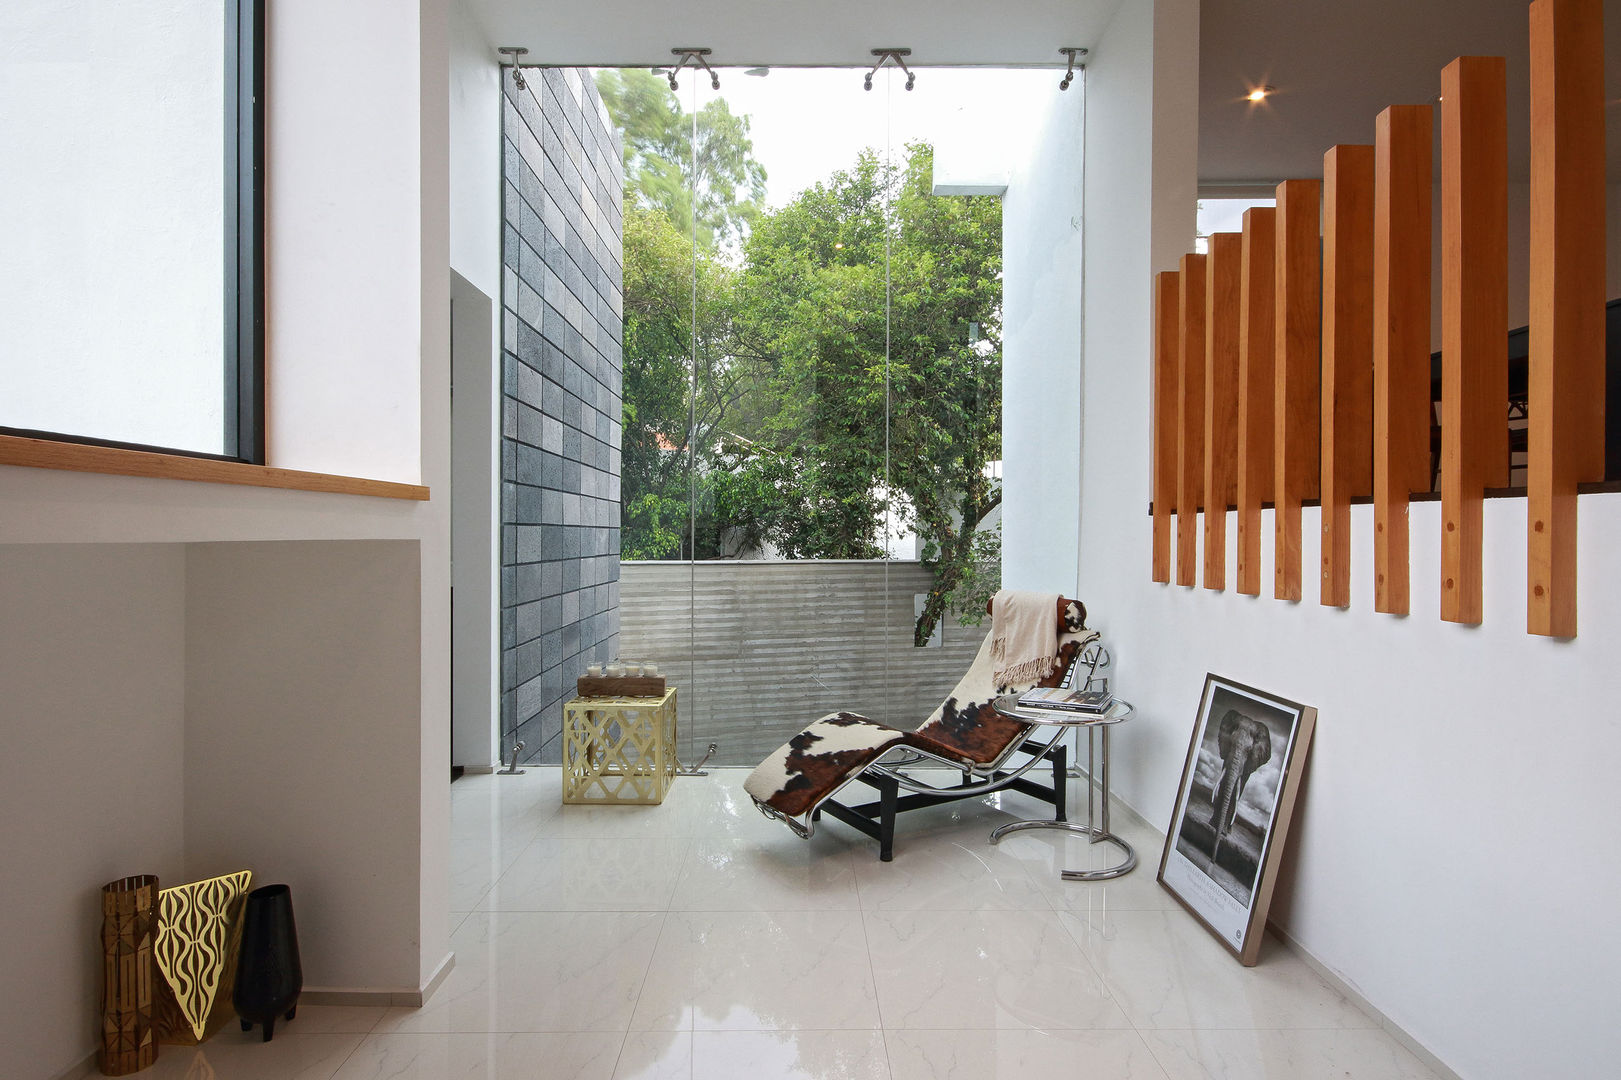 Ampliación de casa en Ciudad de Mexico - Casa BG, All Arquitectura All Arquitectura Pasillos, vestíbulos y escaleras minimalistas Vidrio